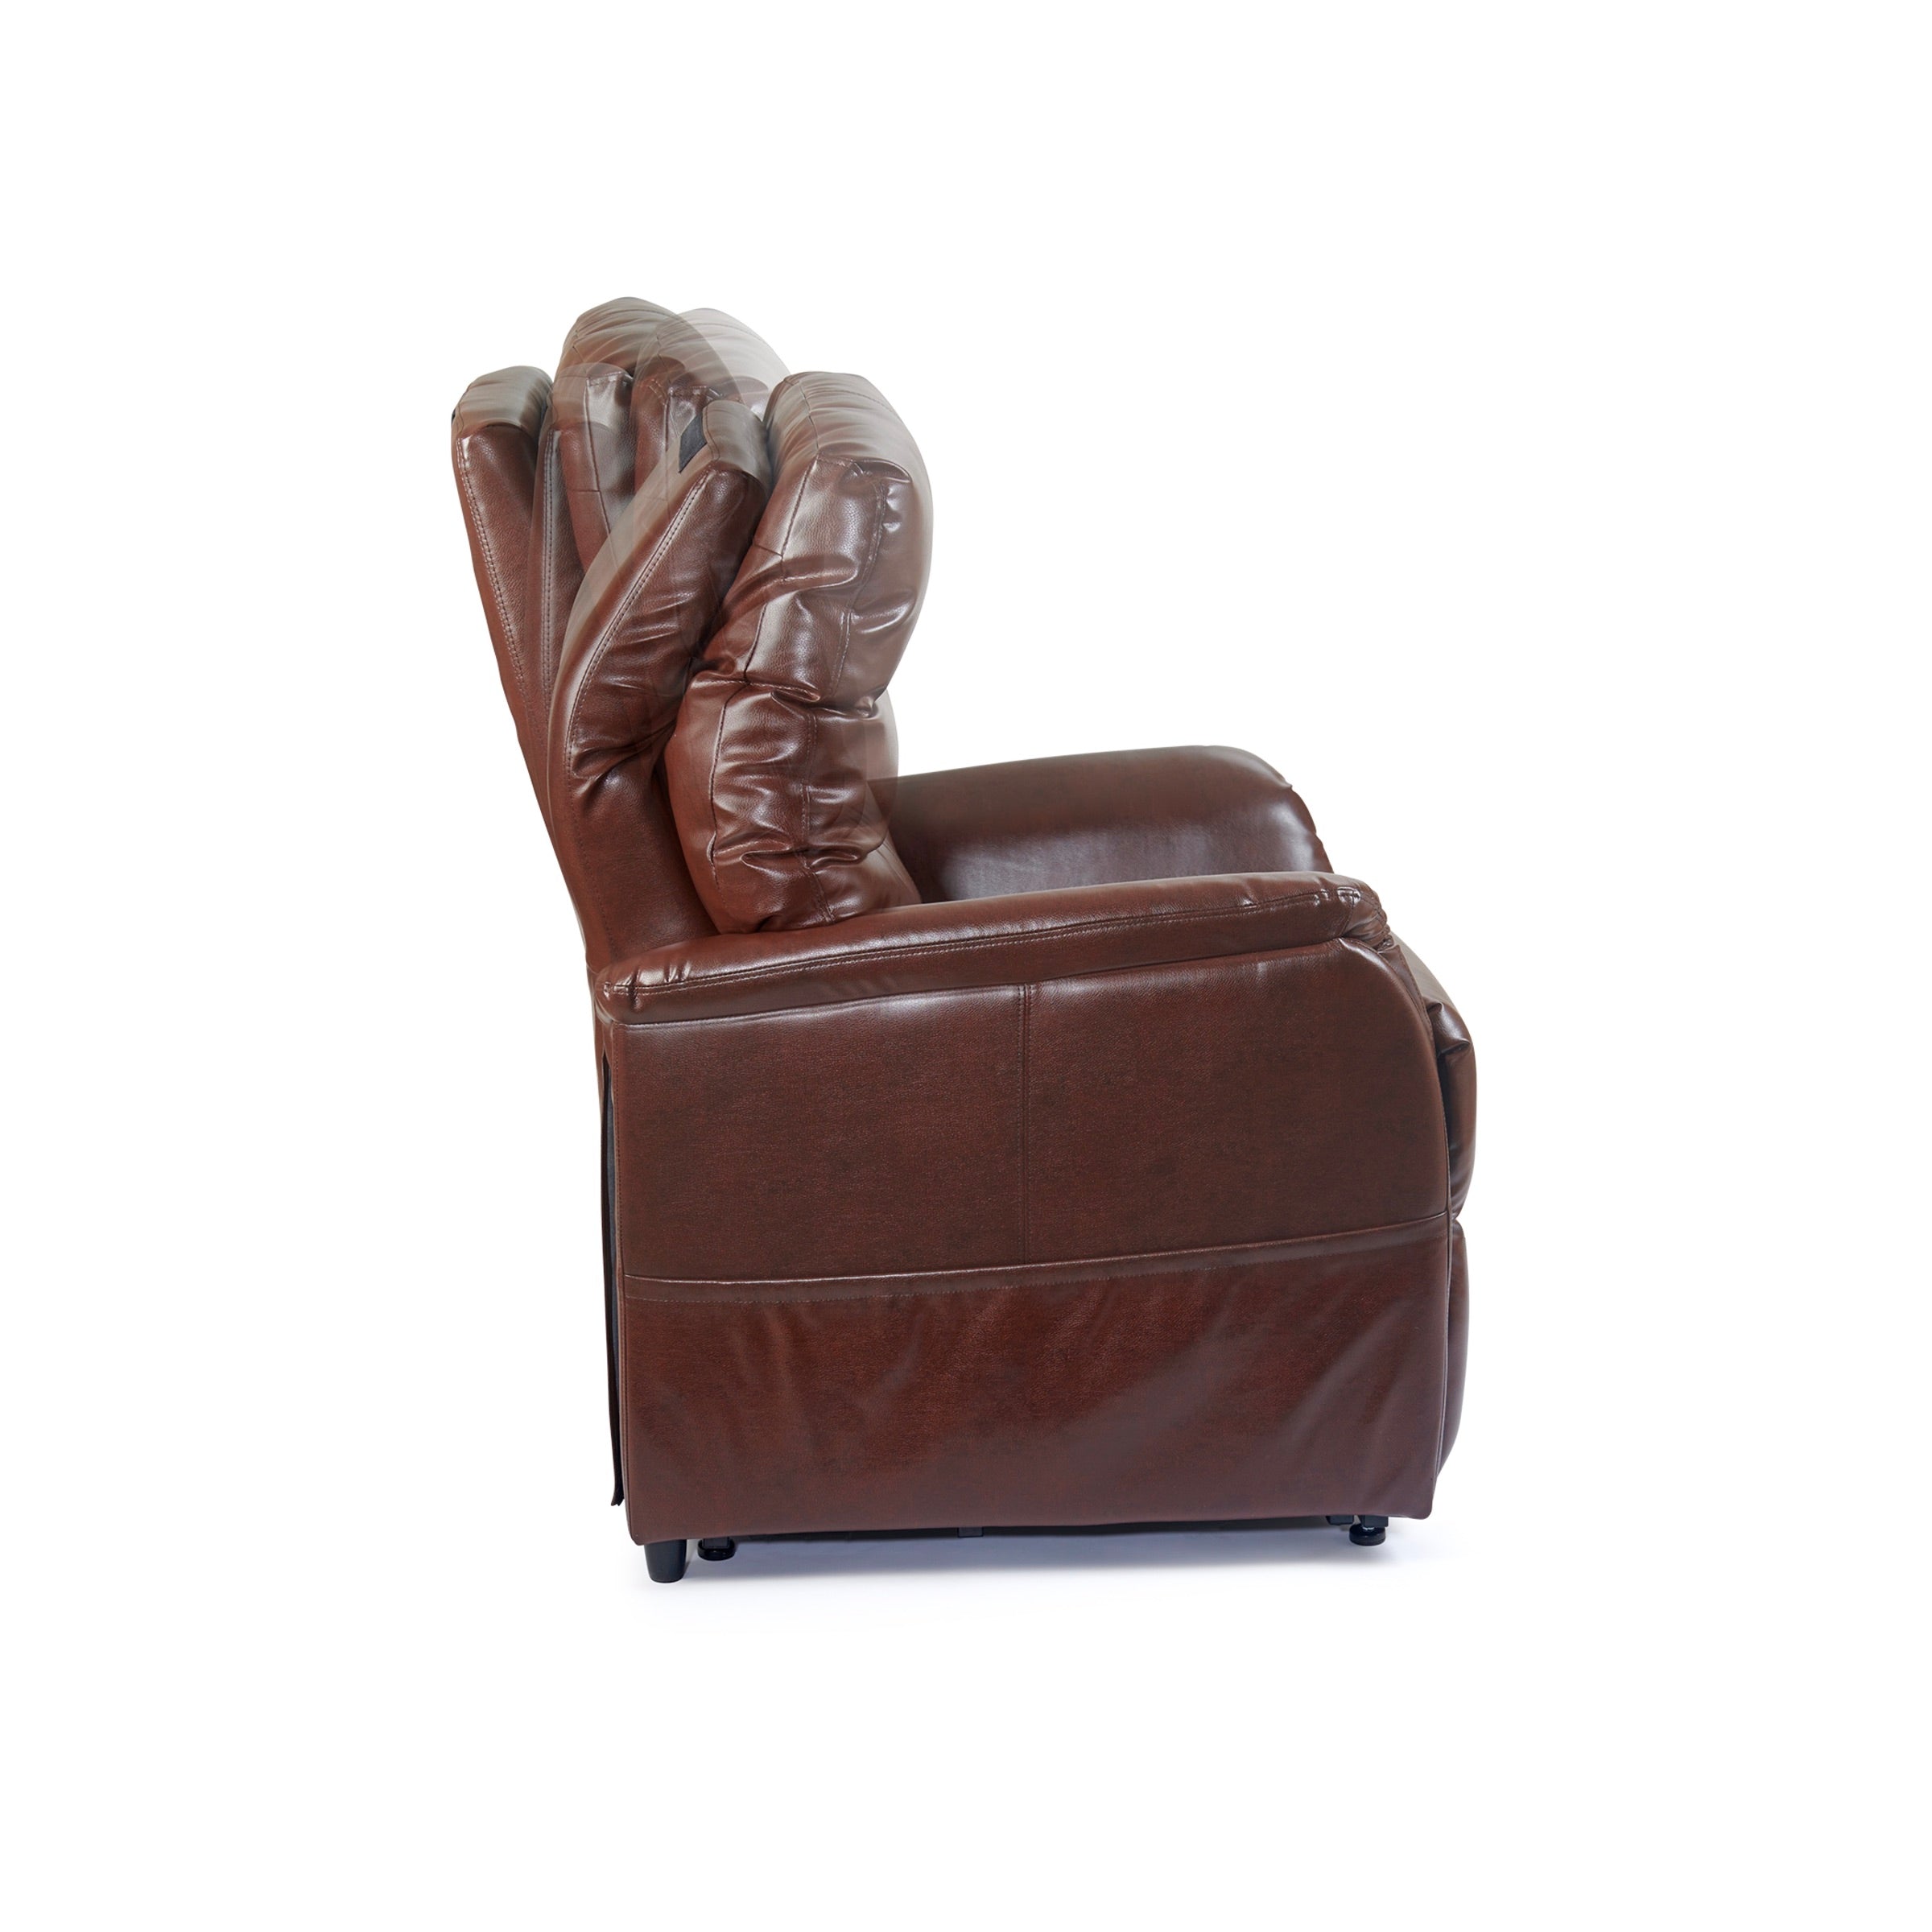 Destin Lift Chair Recliner, adjustable headrest